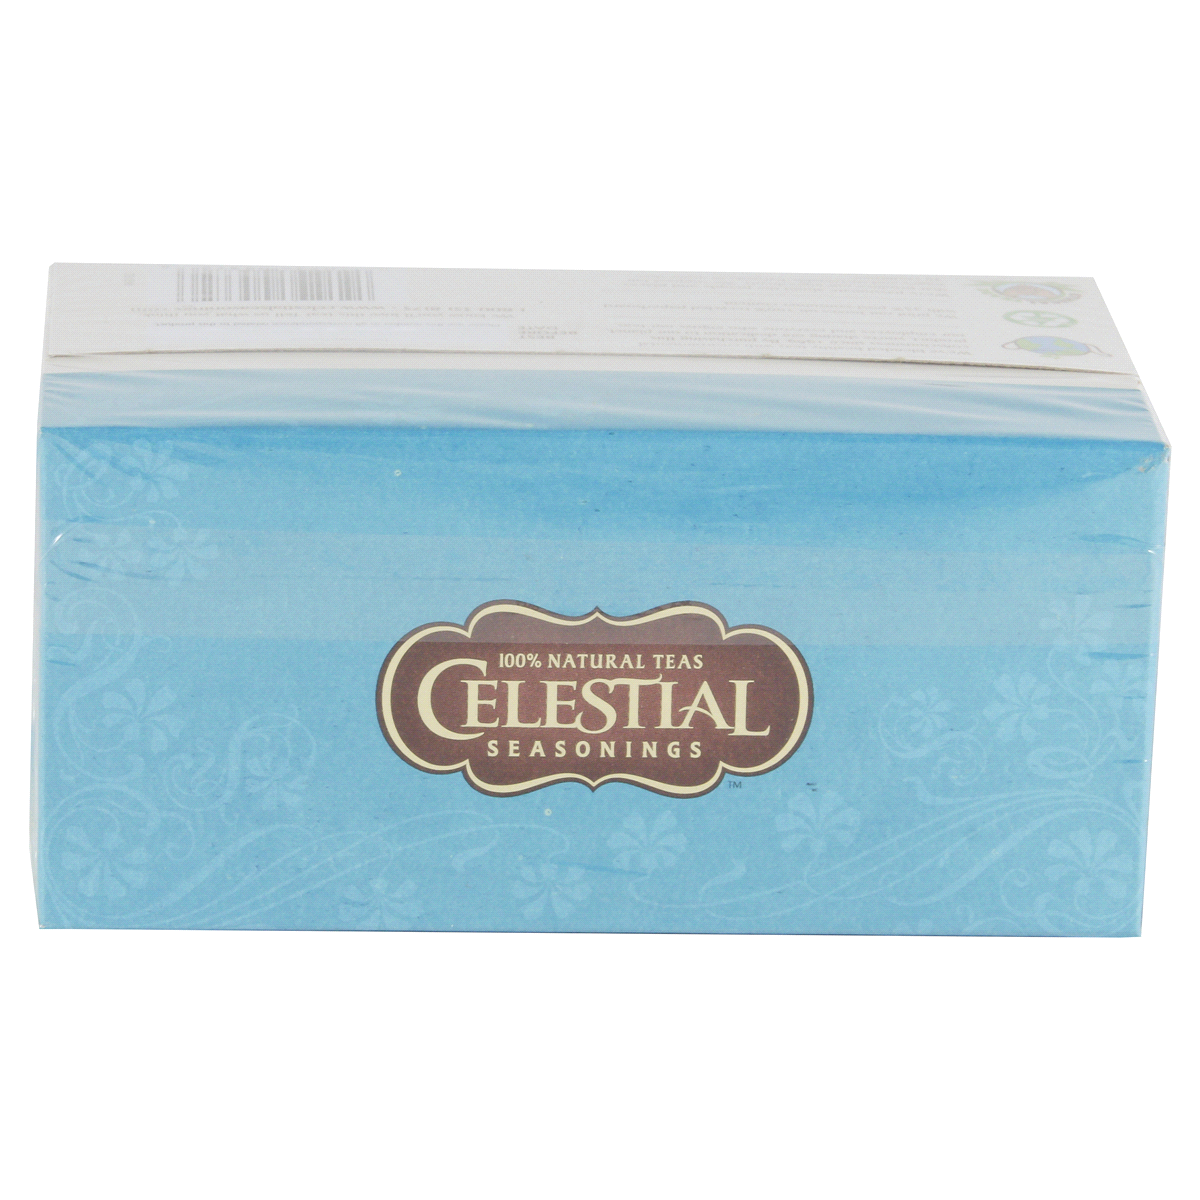 slide 16 of 31, Celestial Seasonings Sleepytime Extra Caffeine Free Herbal Supplement Tea Bags 20 ct Box, 1.2 oz